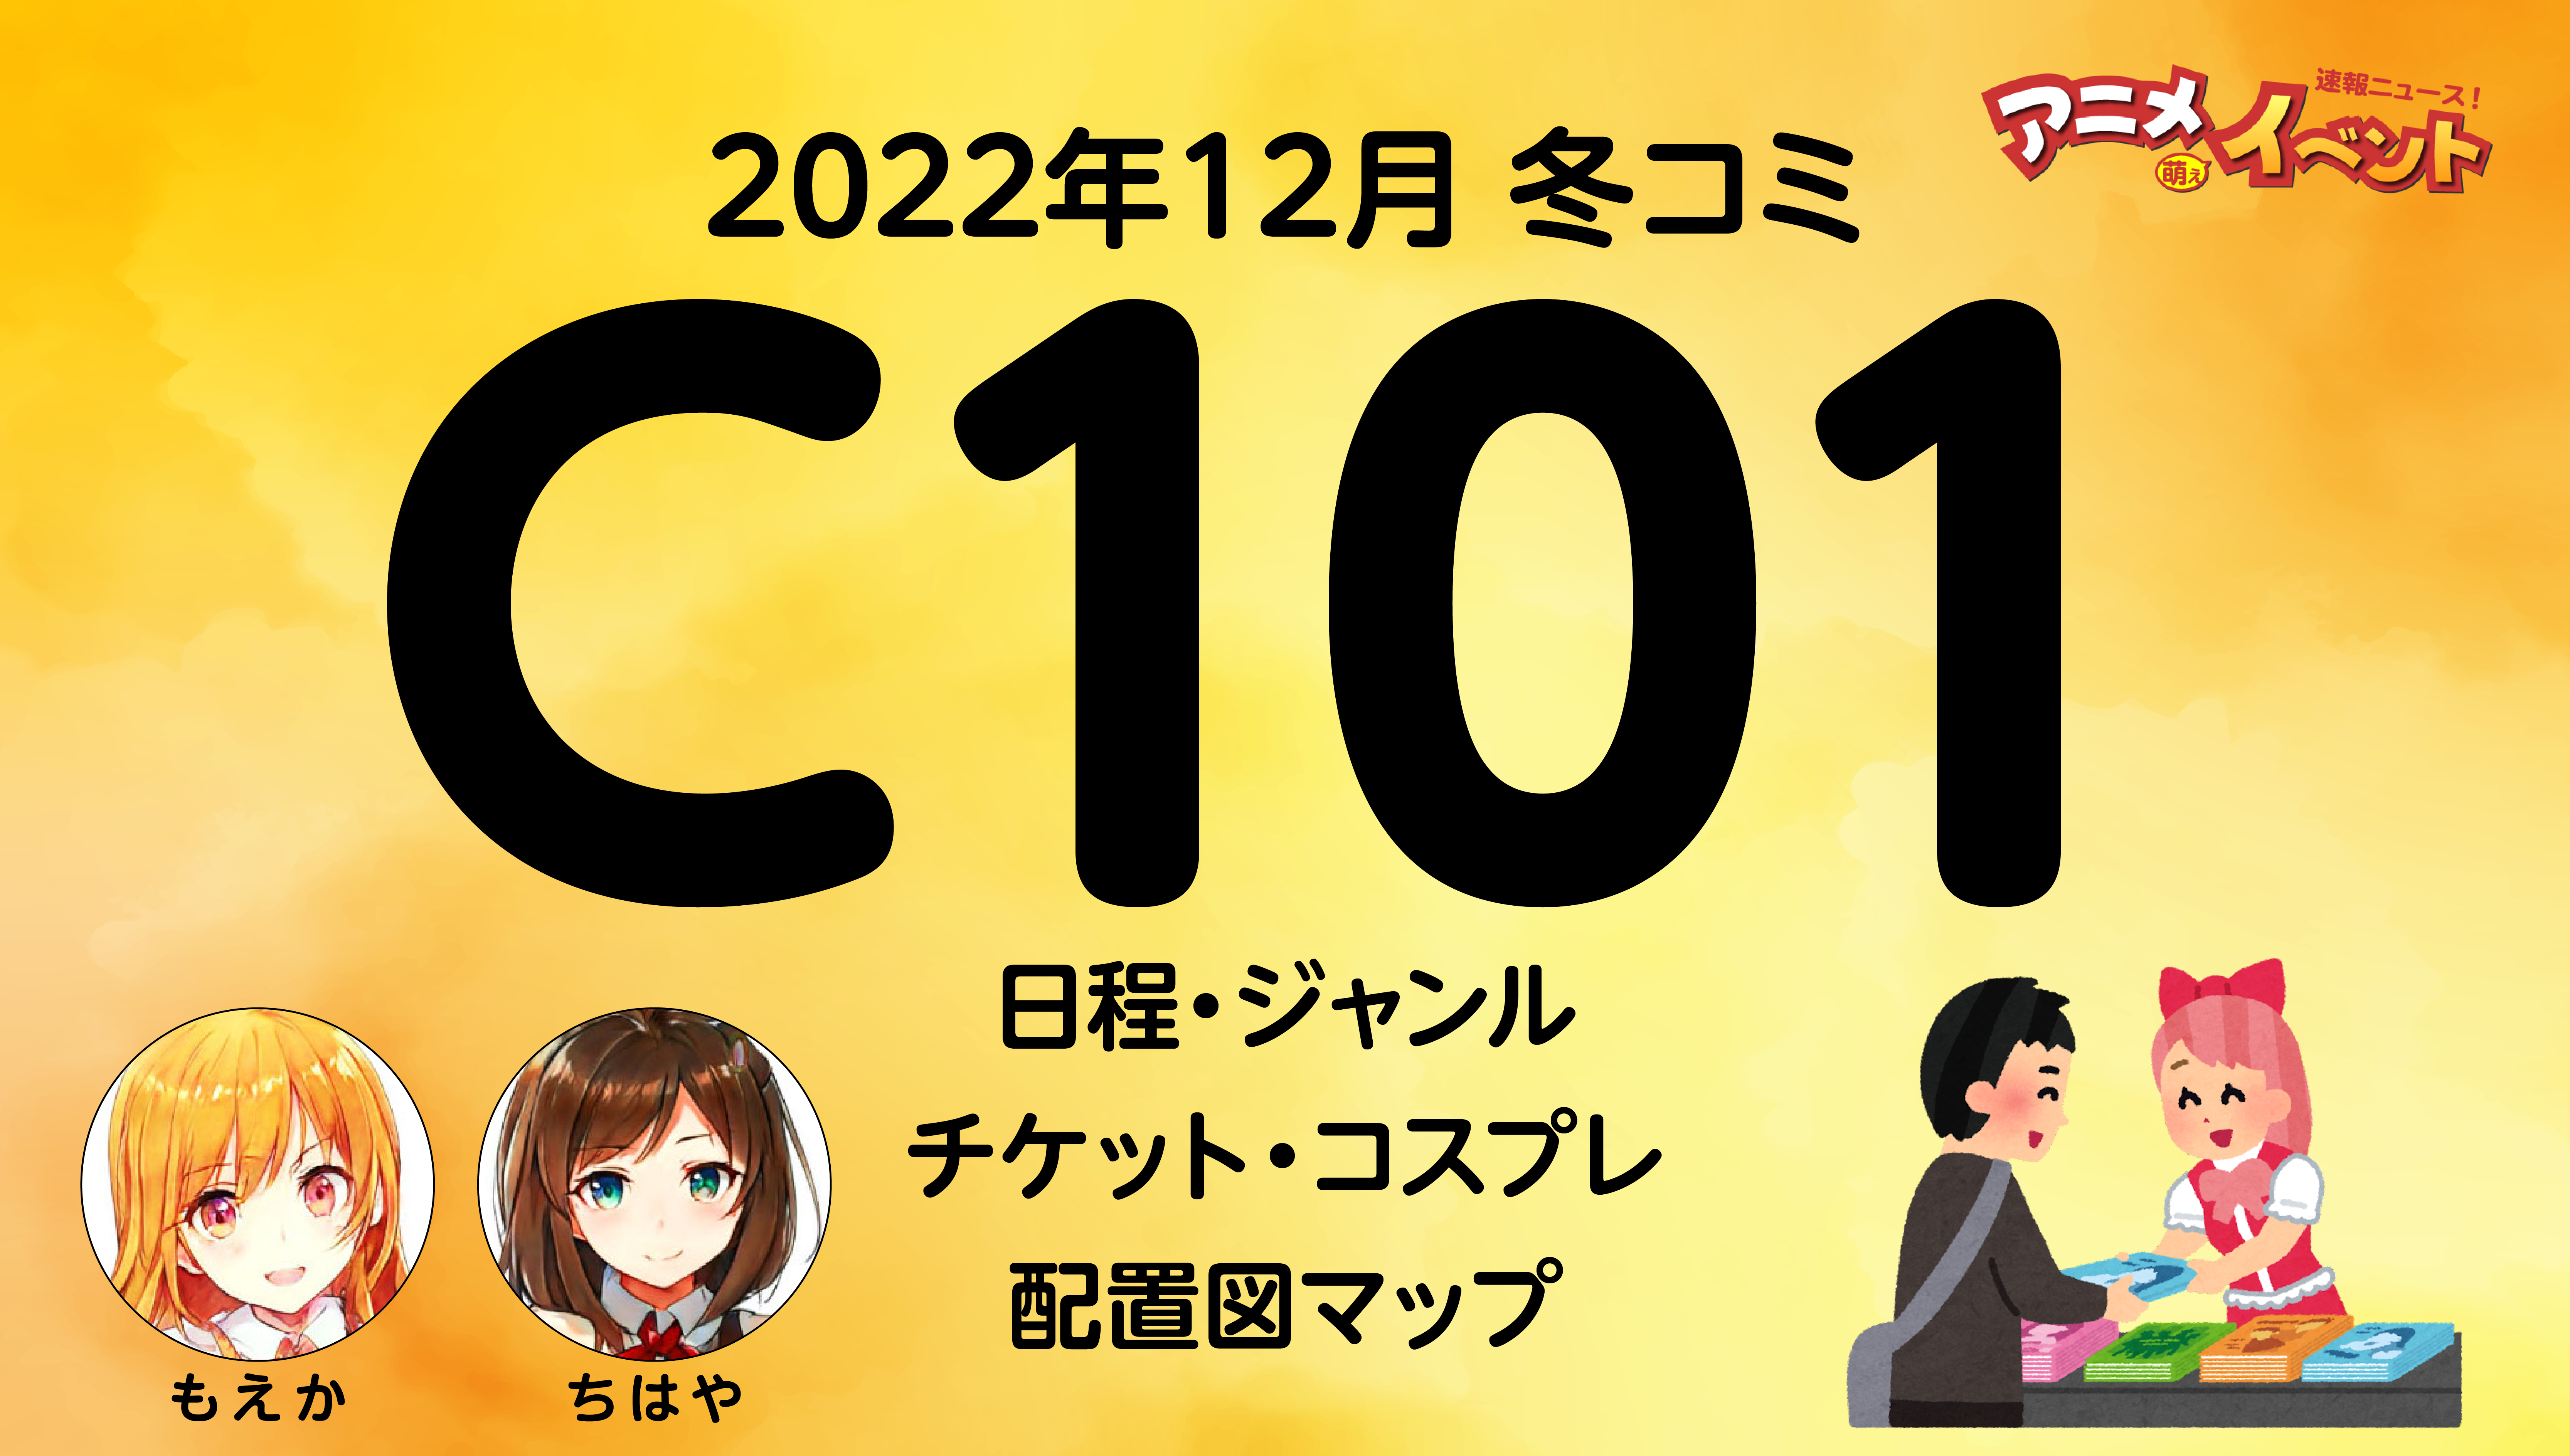 C101 コミケ101 コミックマーケット101 サークルチケット 2日目